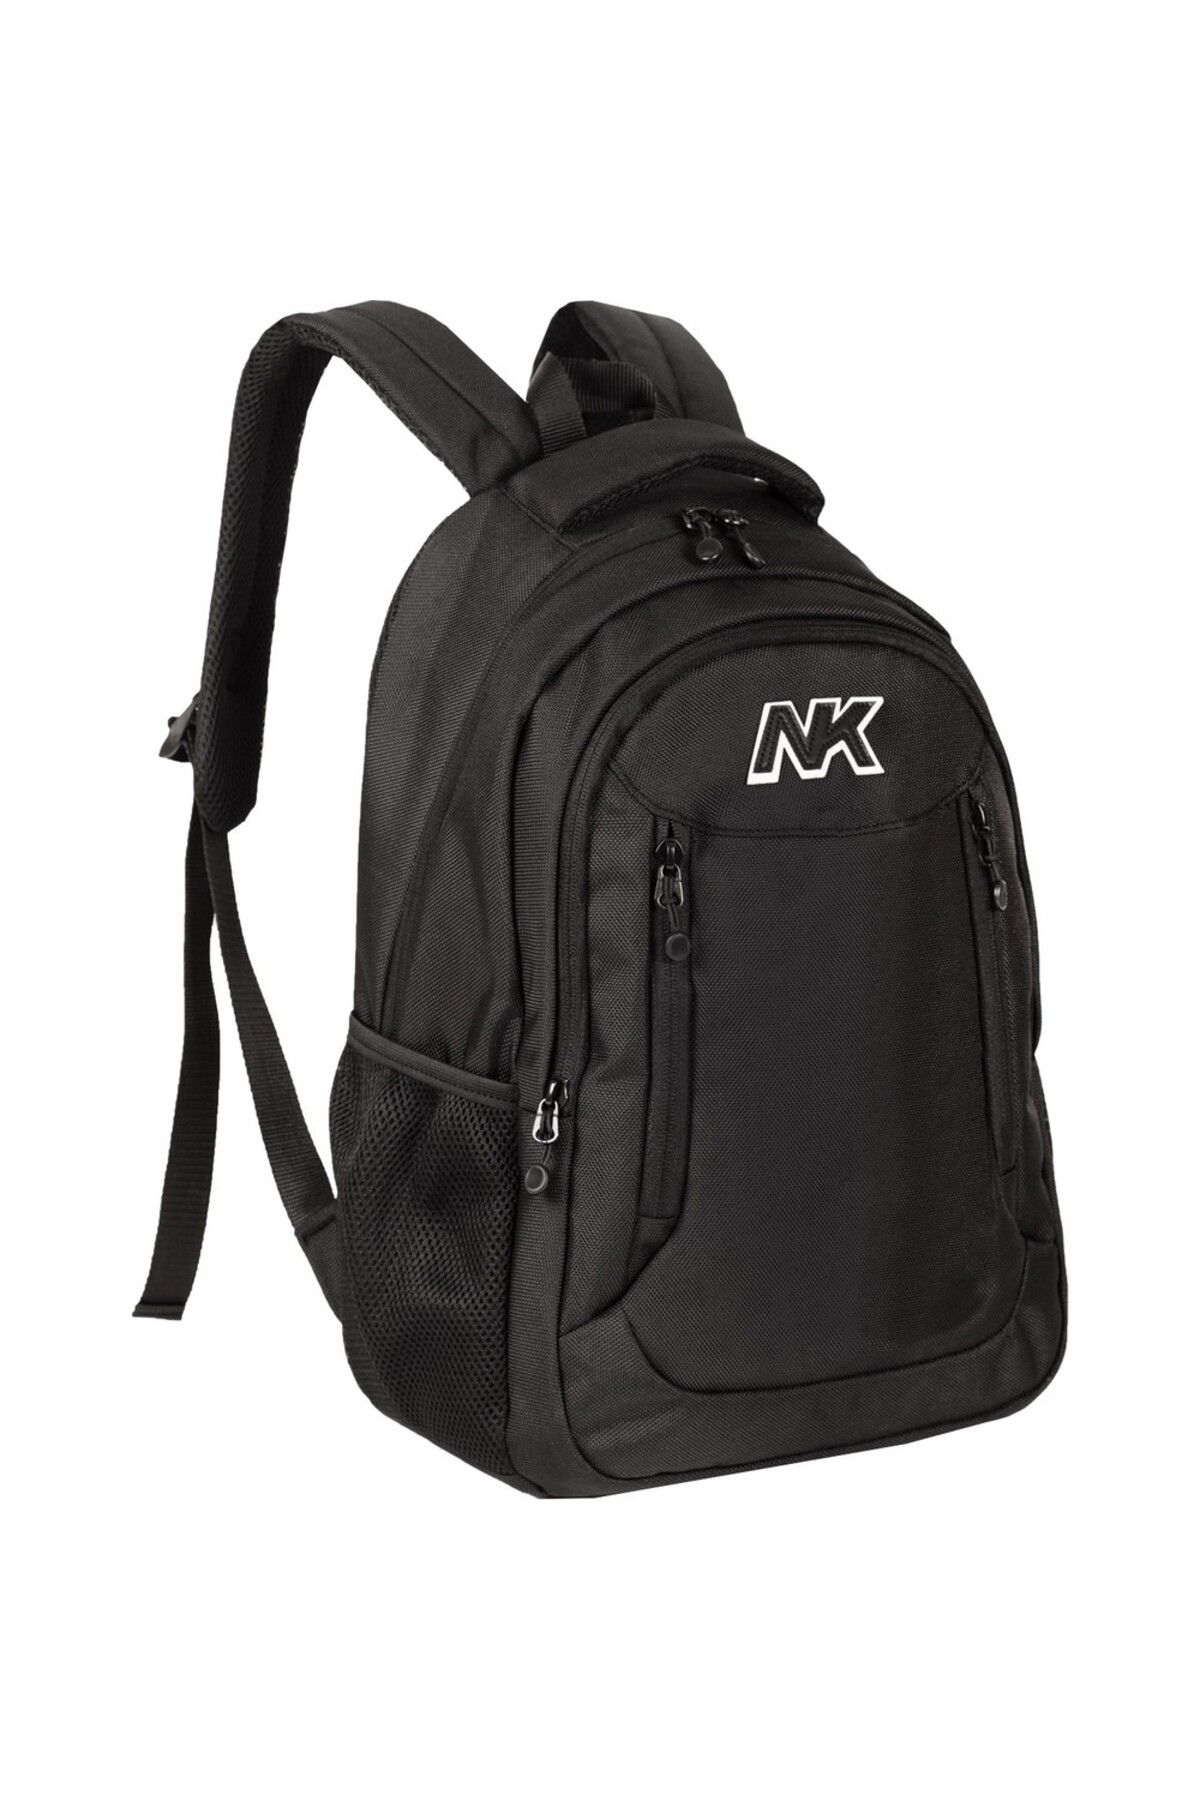 NK Unisex Okul Sırt Çantası 15' Laptop Bölmeli Çanta